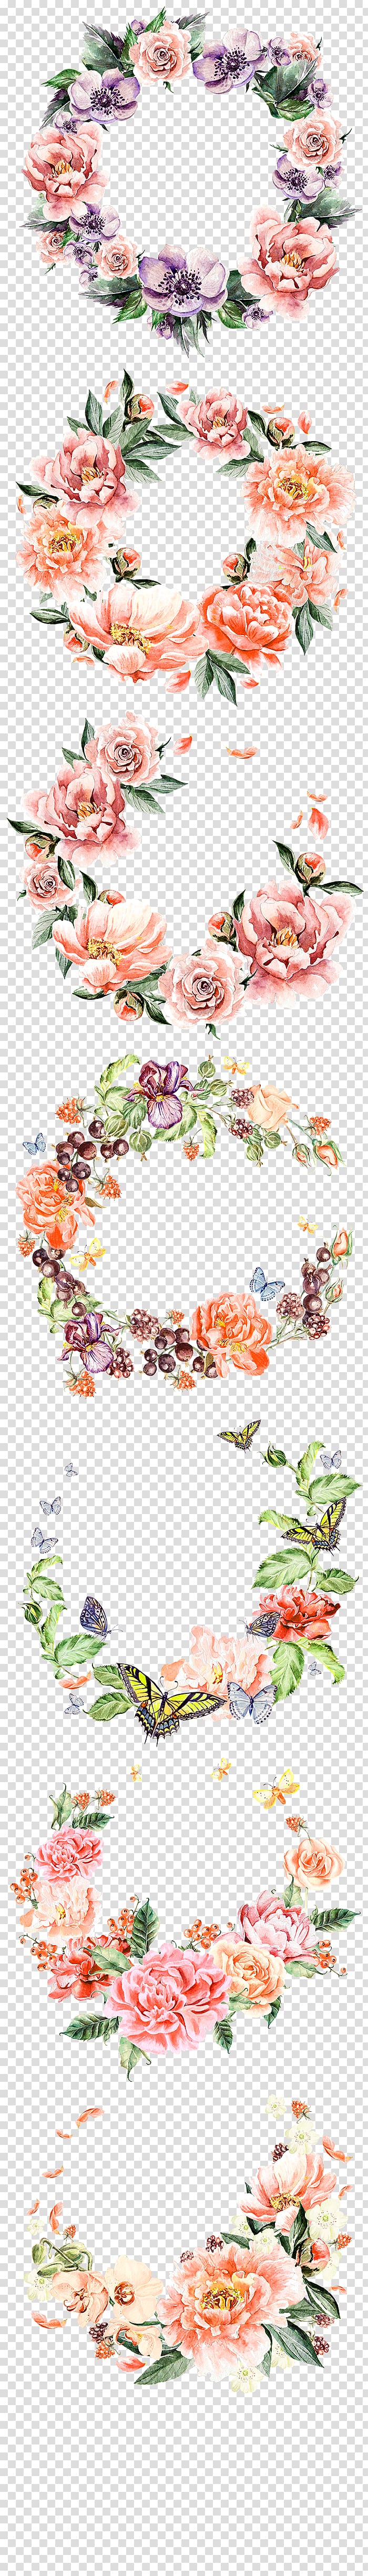 pink flowers, Wreath Flower bouquet, Purple Fresh Wreath Border Texture transparent background PNG clipart